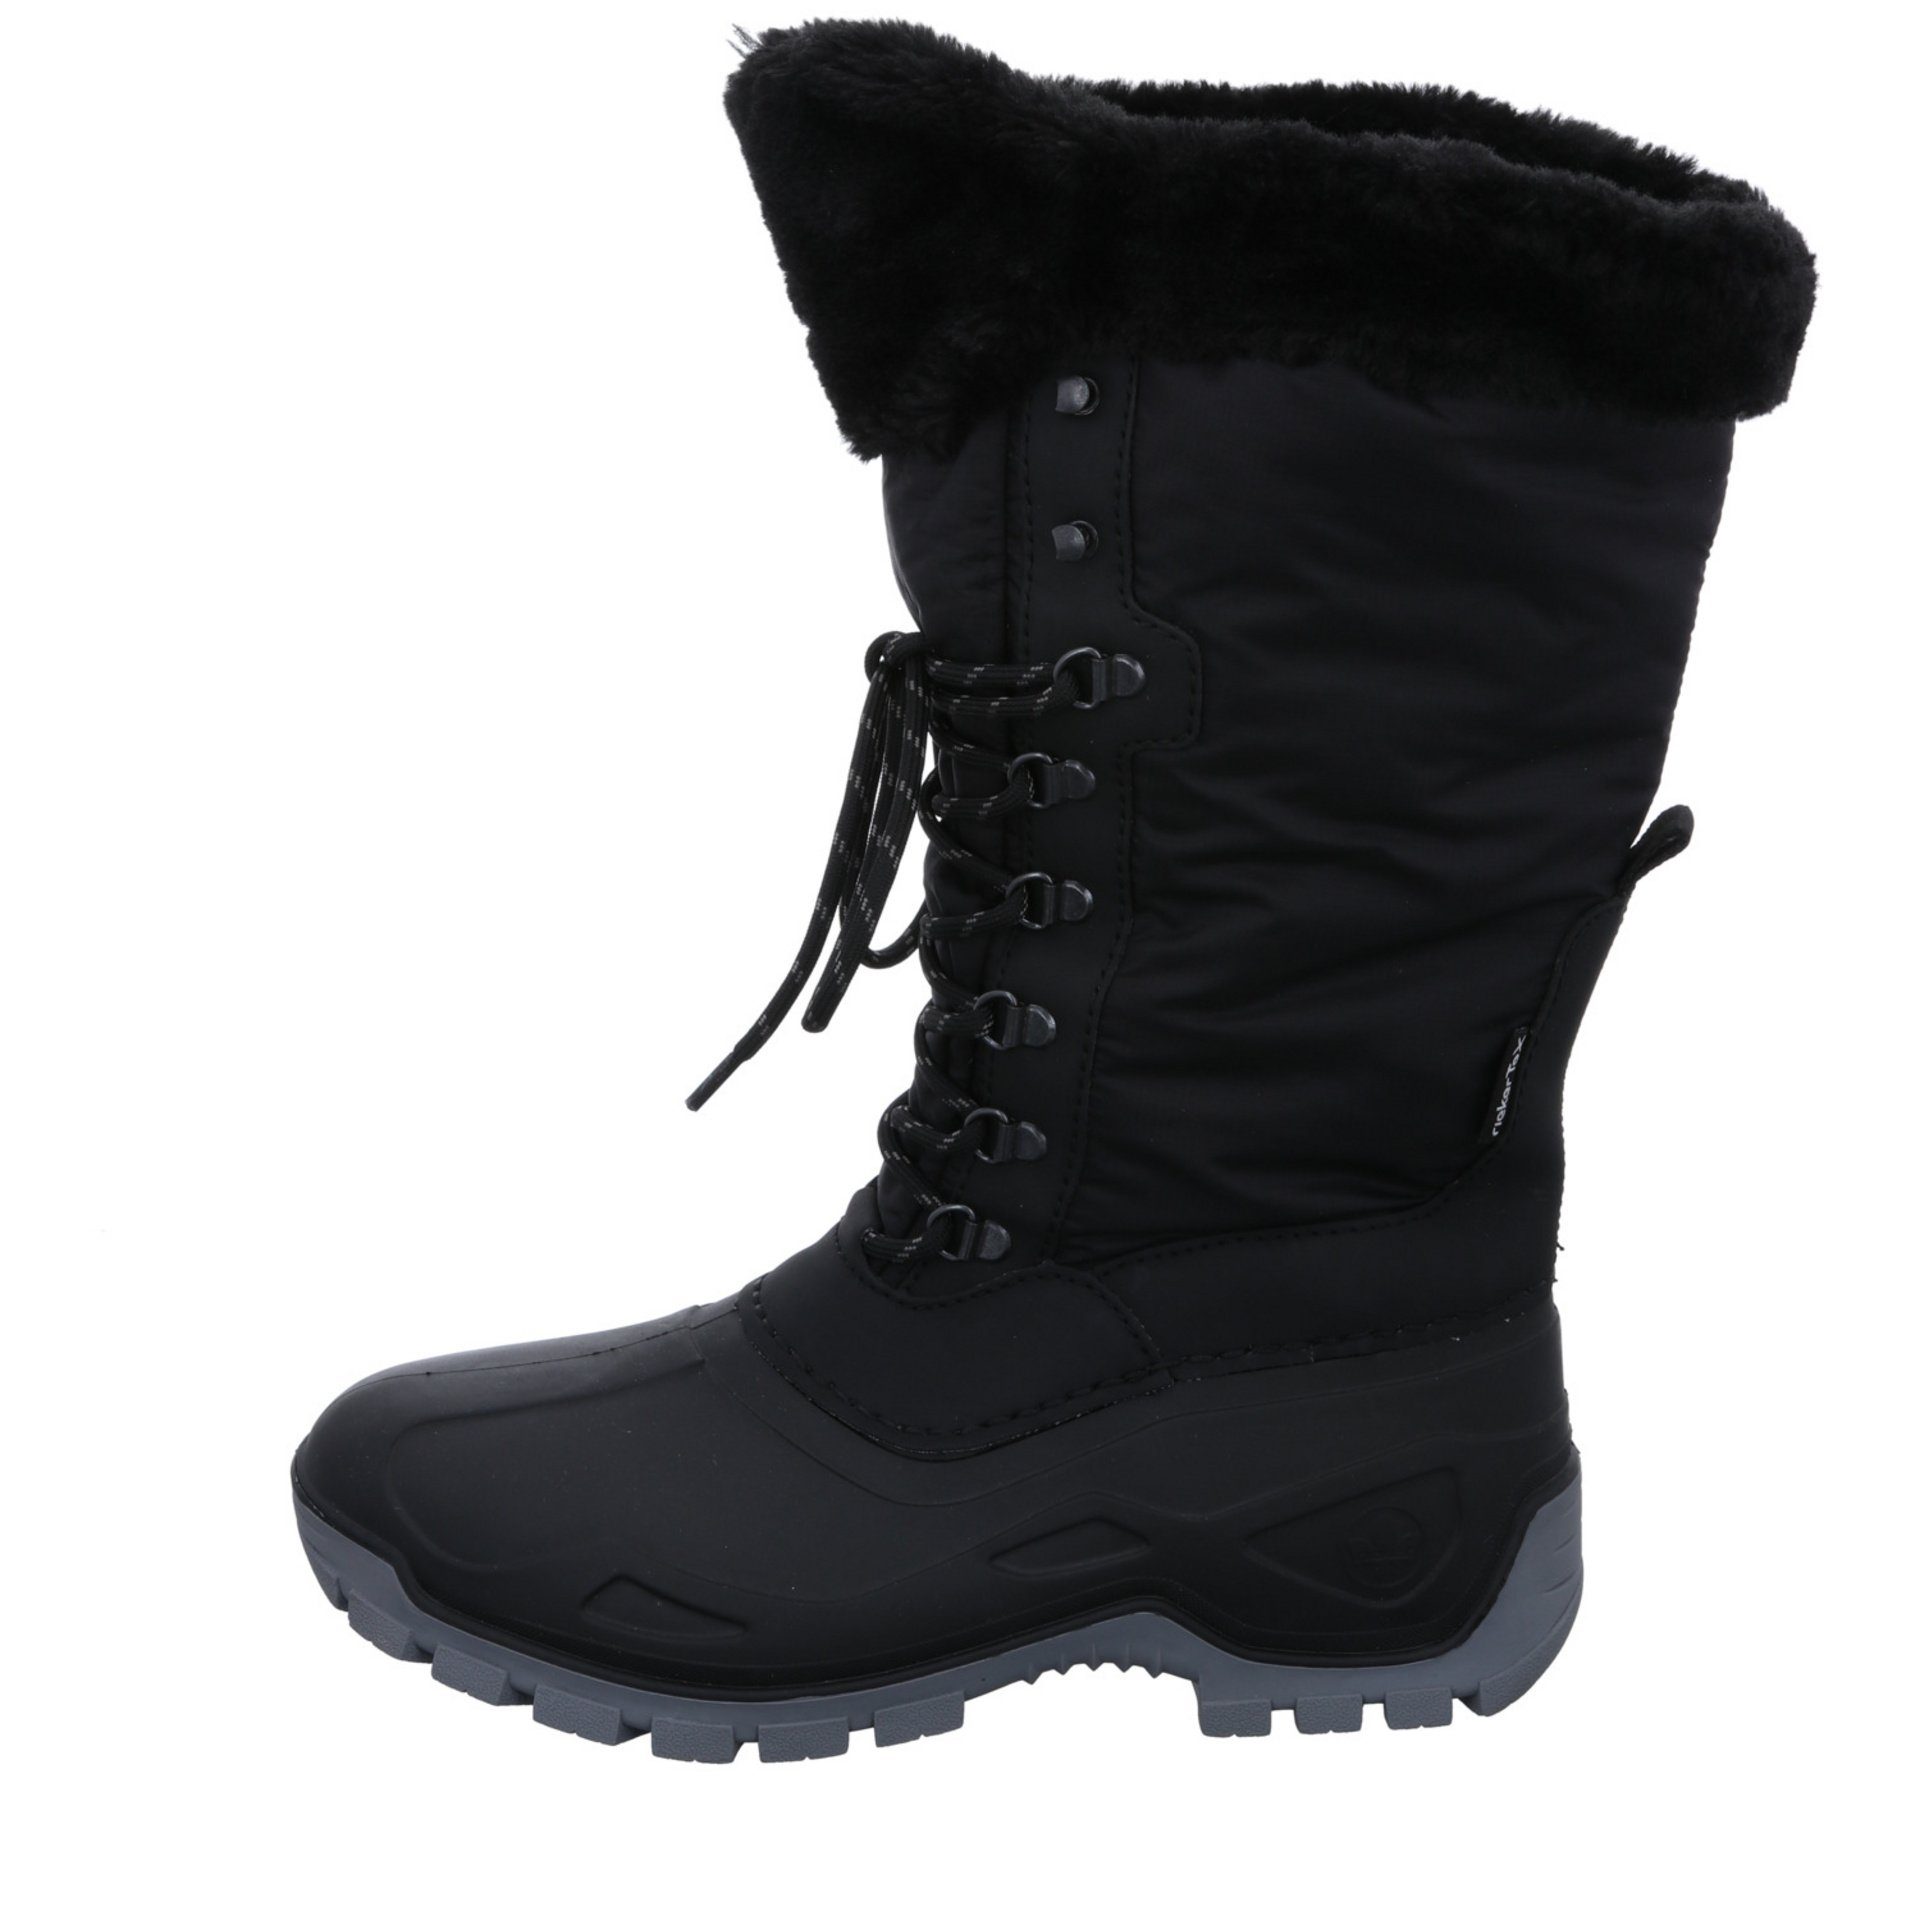 Damen Winter Boots Synthetikkombination Schuhe Snowboots Rieker Snowboots Freizeit schwarz/schwarz/nero